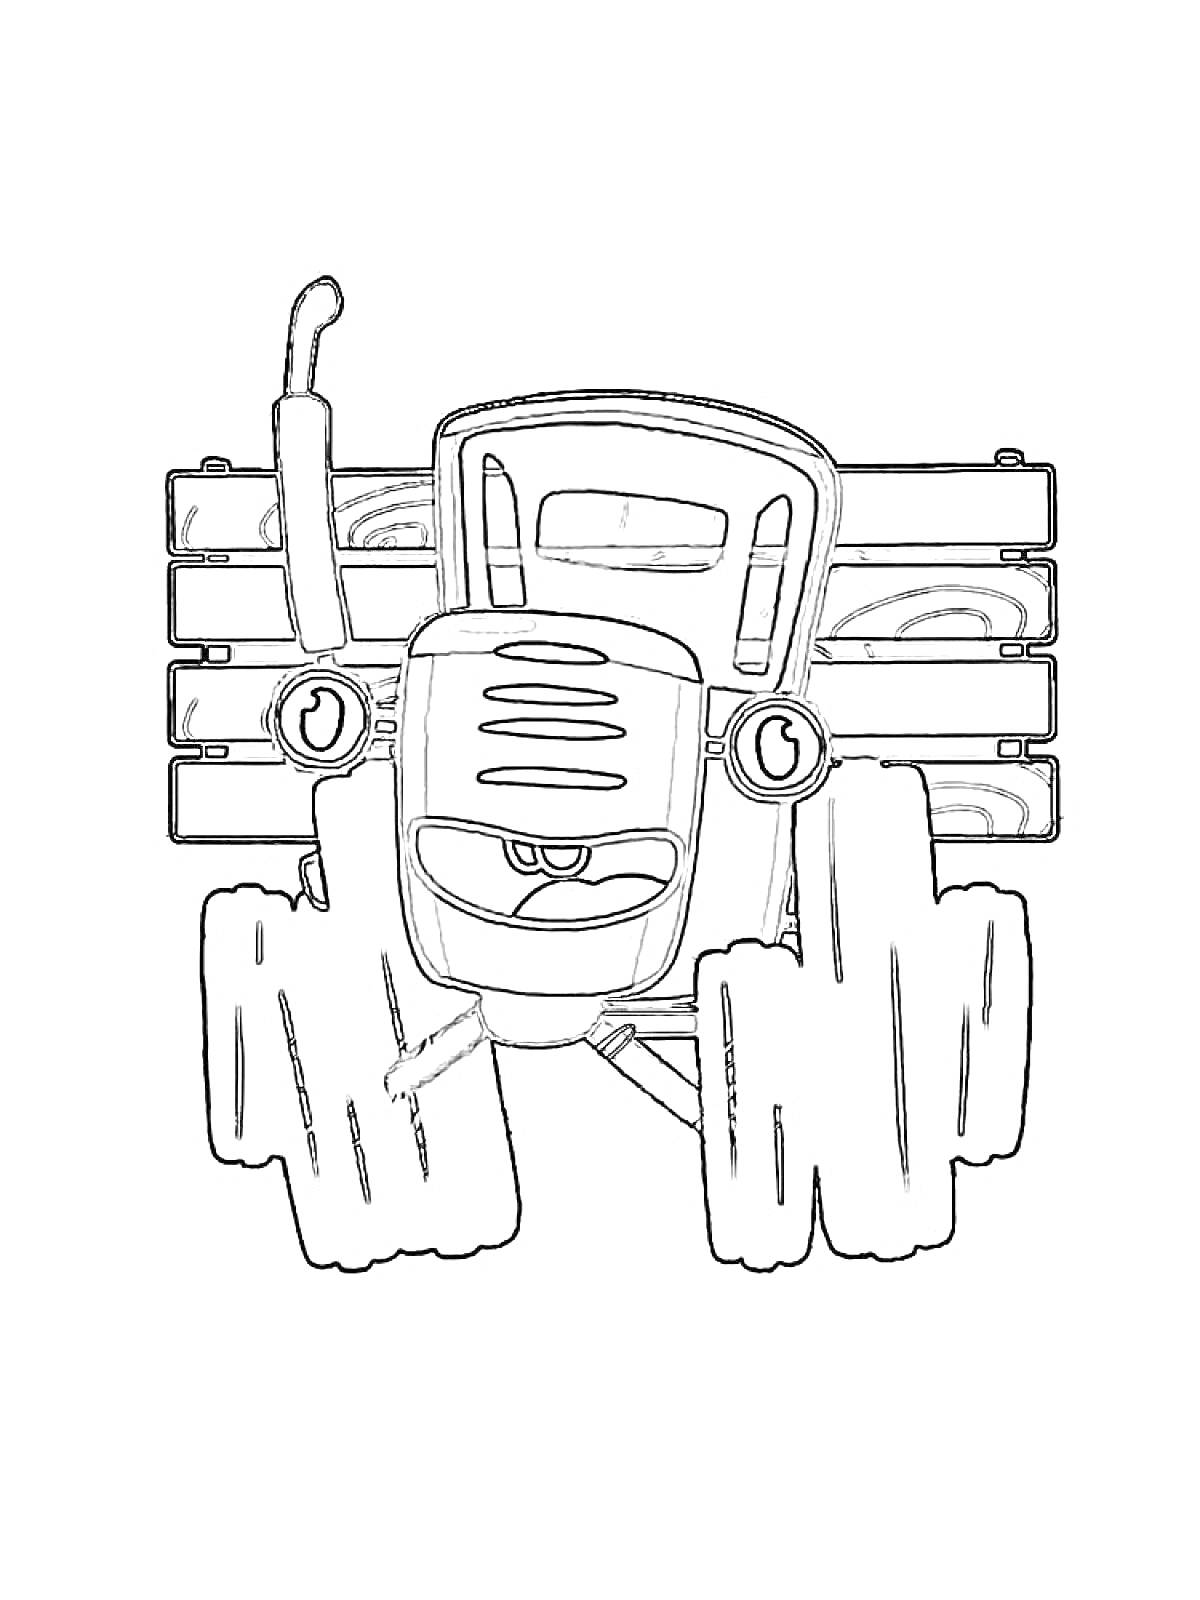 Синий трактор с большими колесами и деревянным забором на заднем плане